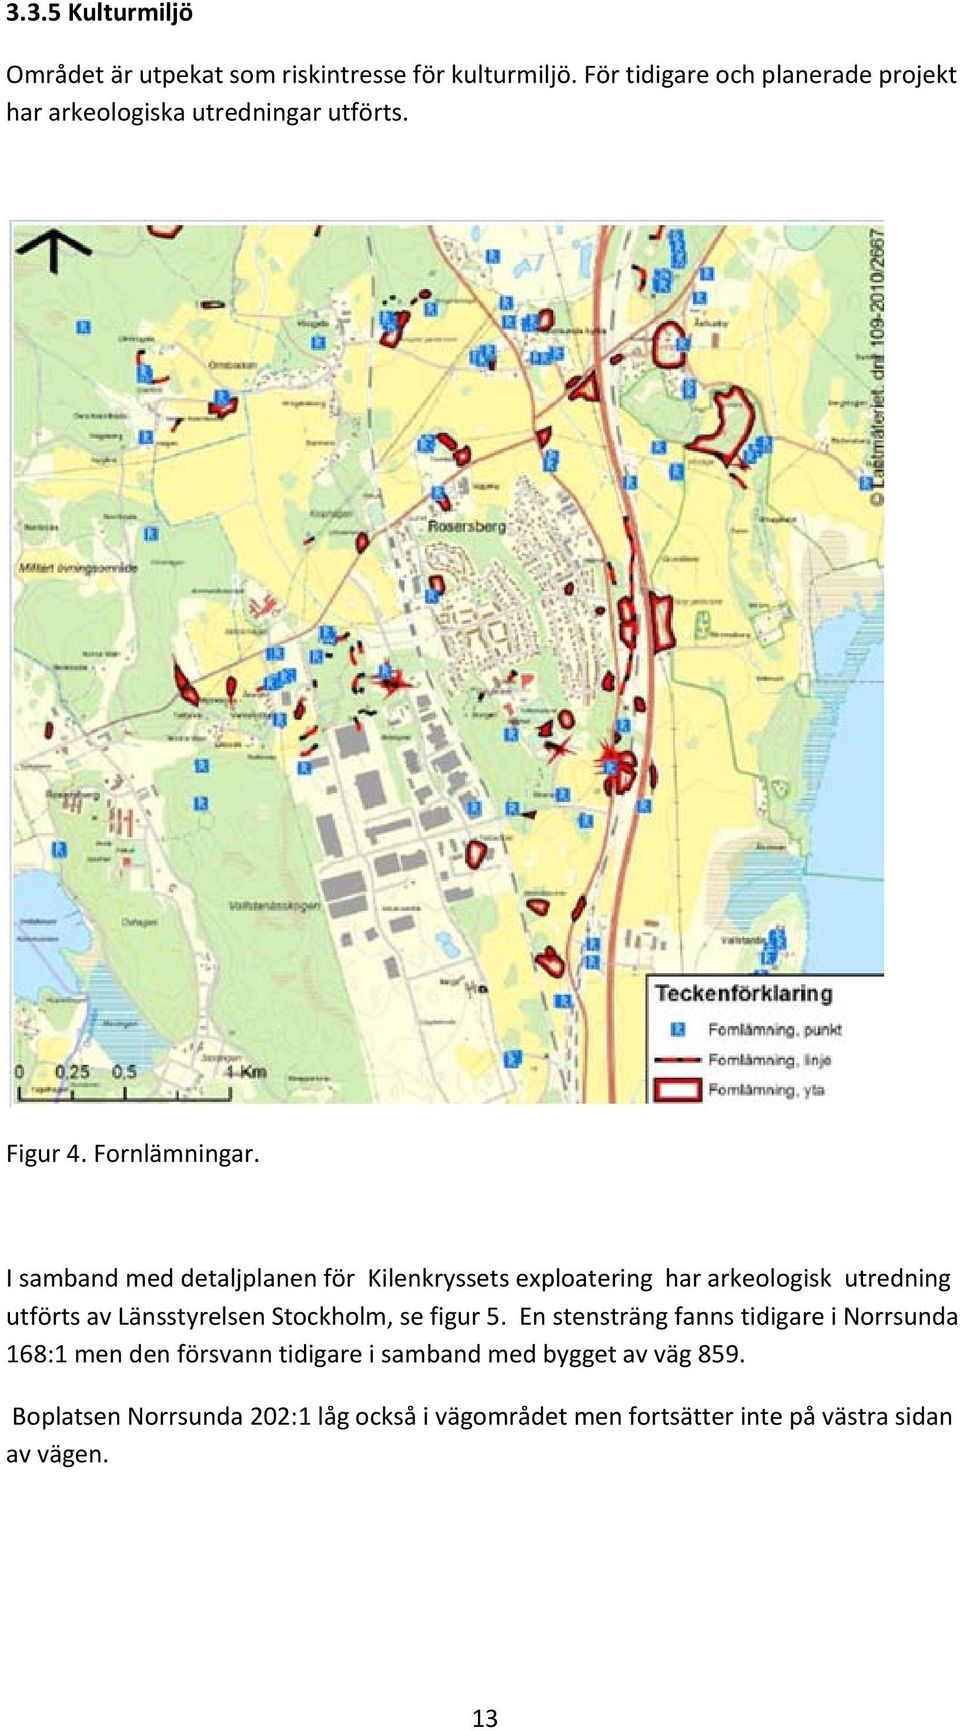 I samband med detaljplanen för Kilenkryssets exploatering har arkeologisk utredning utförts av Länsstyrelsen Stockholm, se